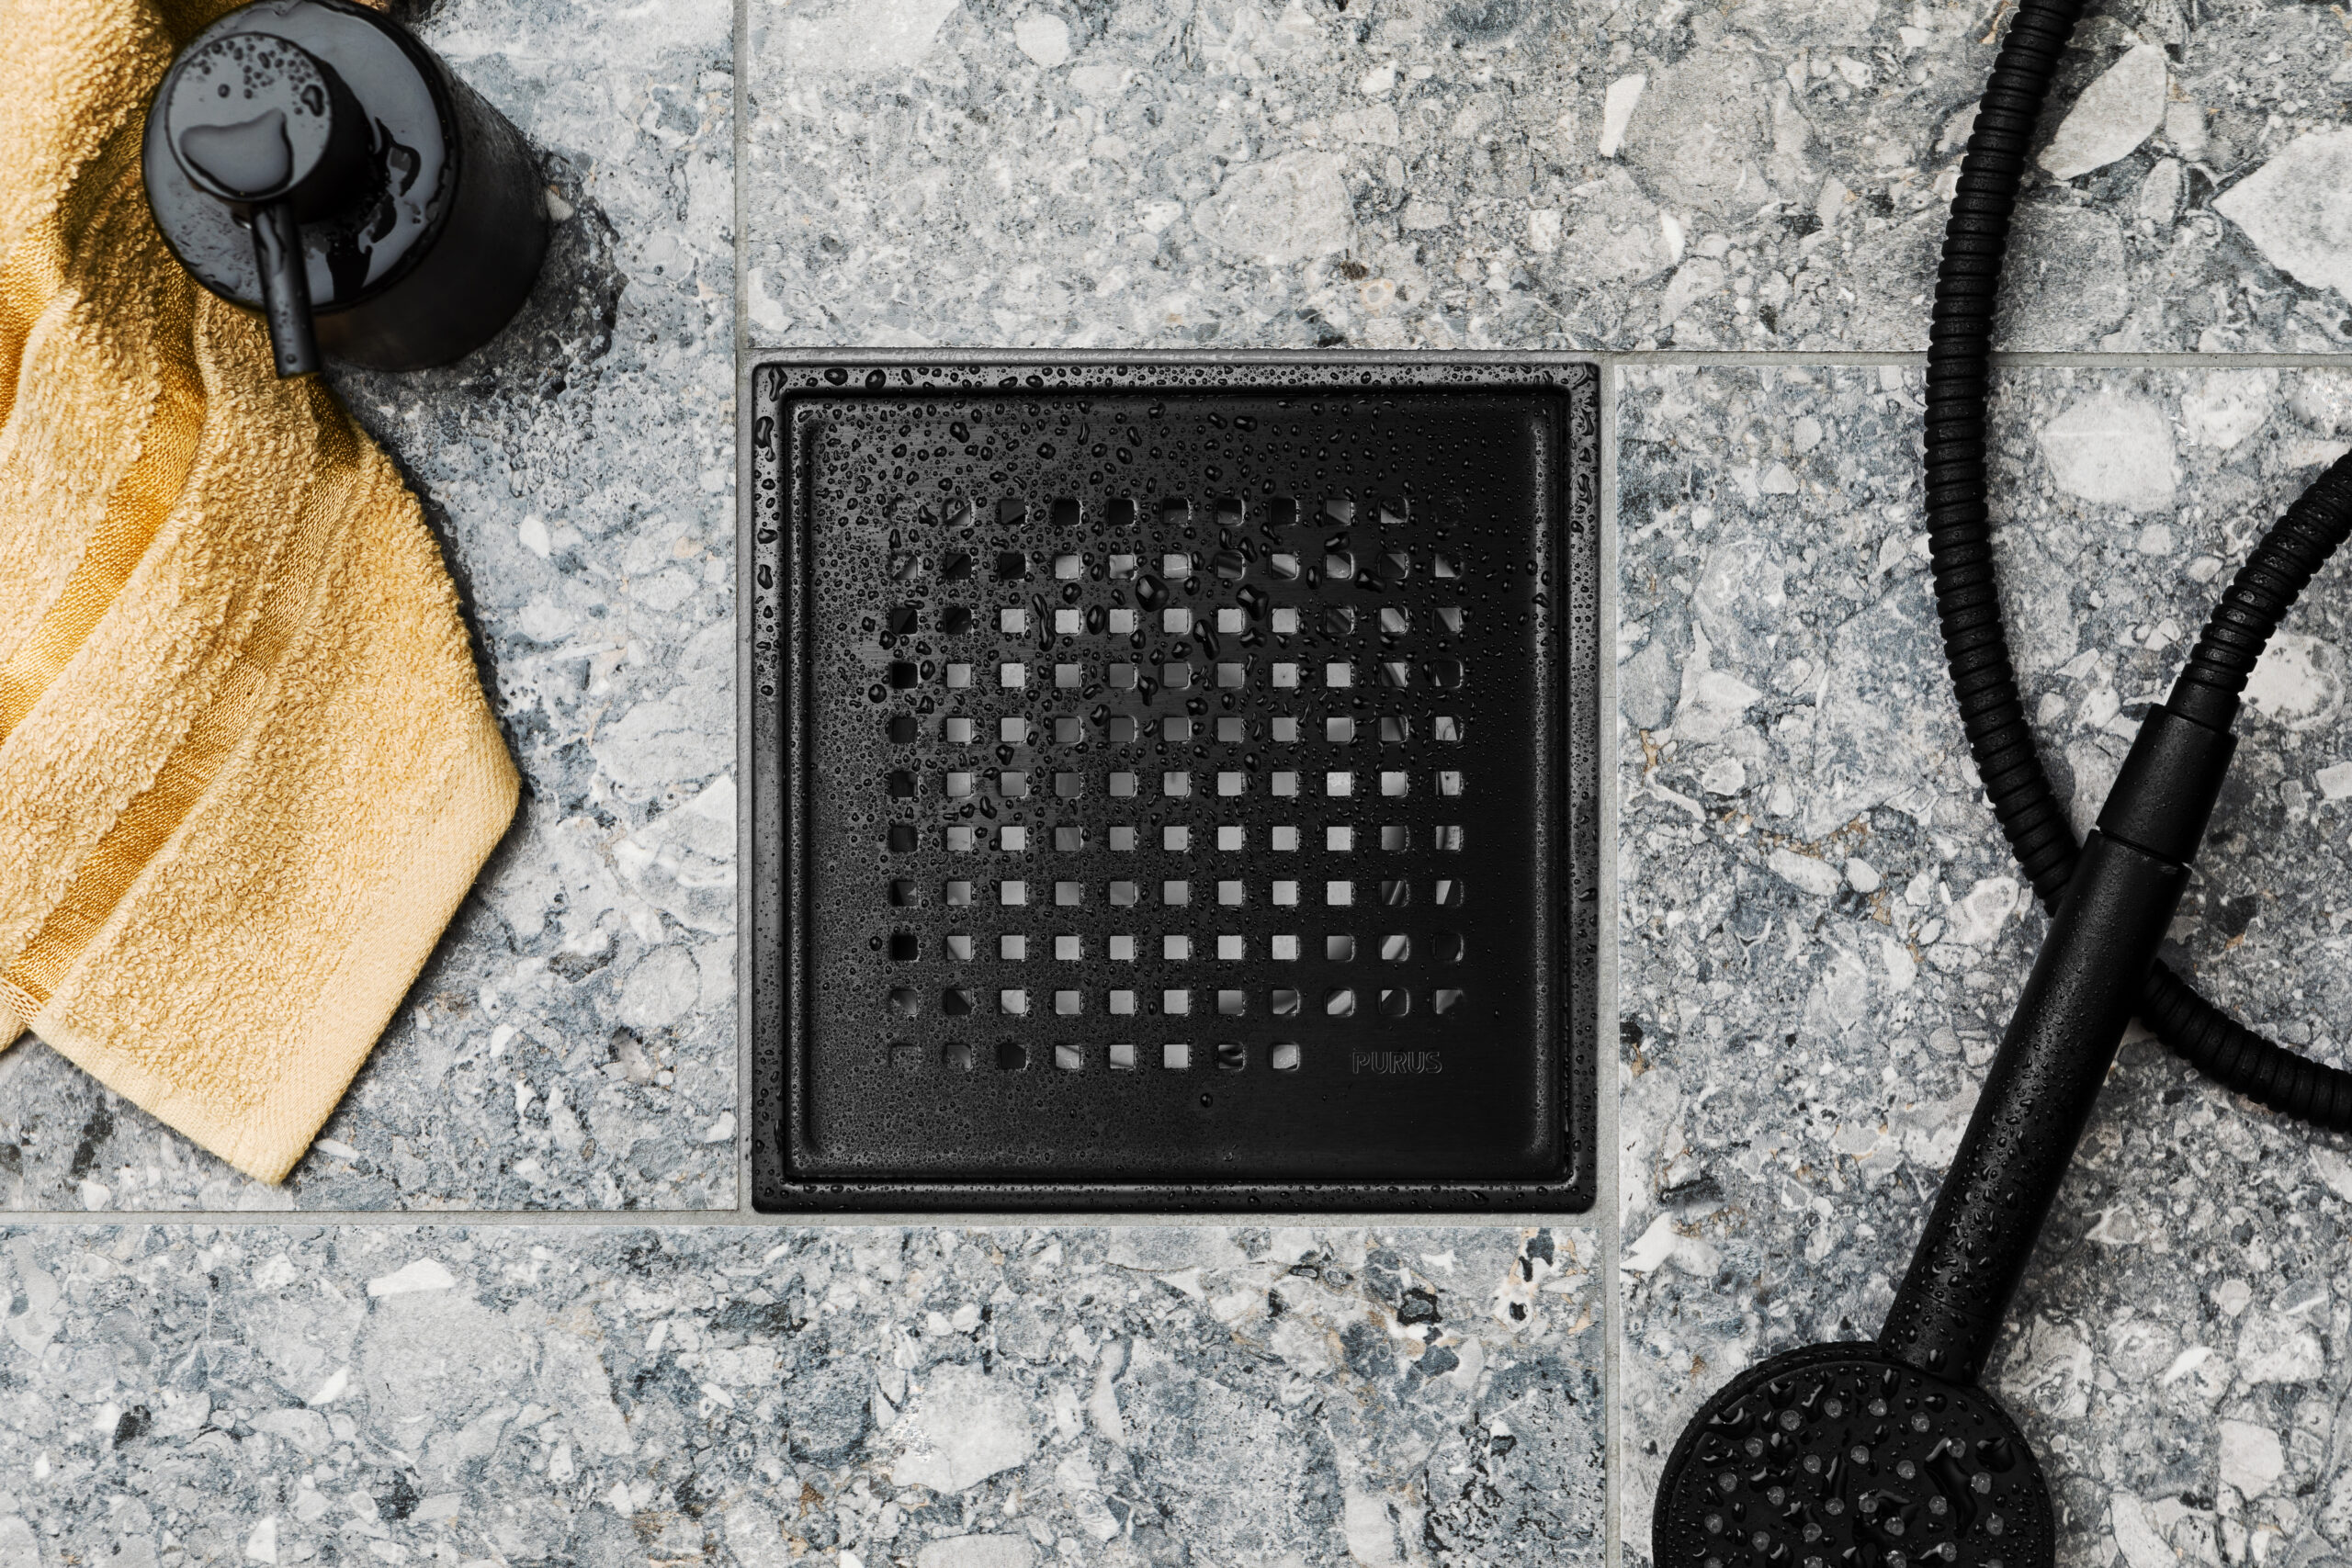 Et nærbilde av Purus Square matt svart slukrist i Chess-mønster, elegant plassert i et flislagt gulv med grå Ceppo/terrazzo-fliser, viser et moderne og stilfullt designvalg for ethvert baderom.